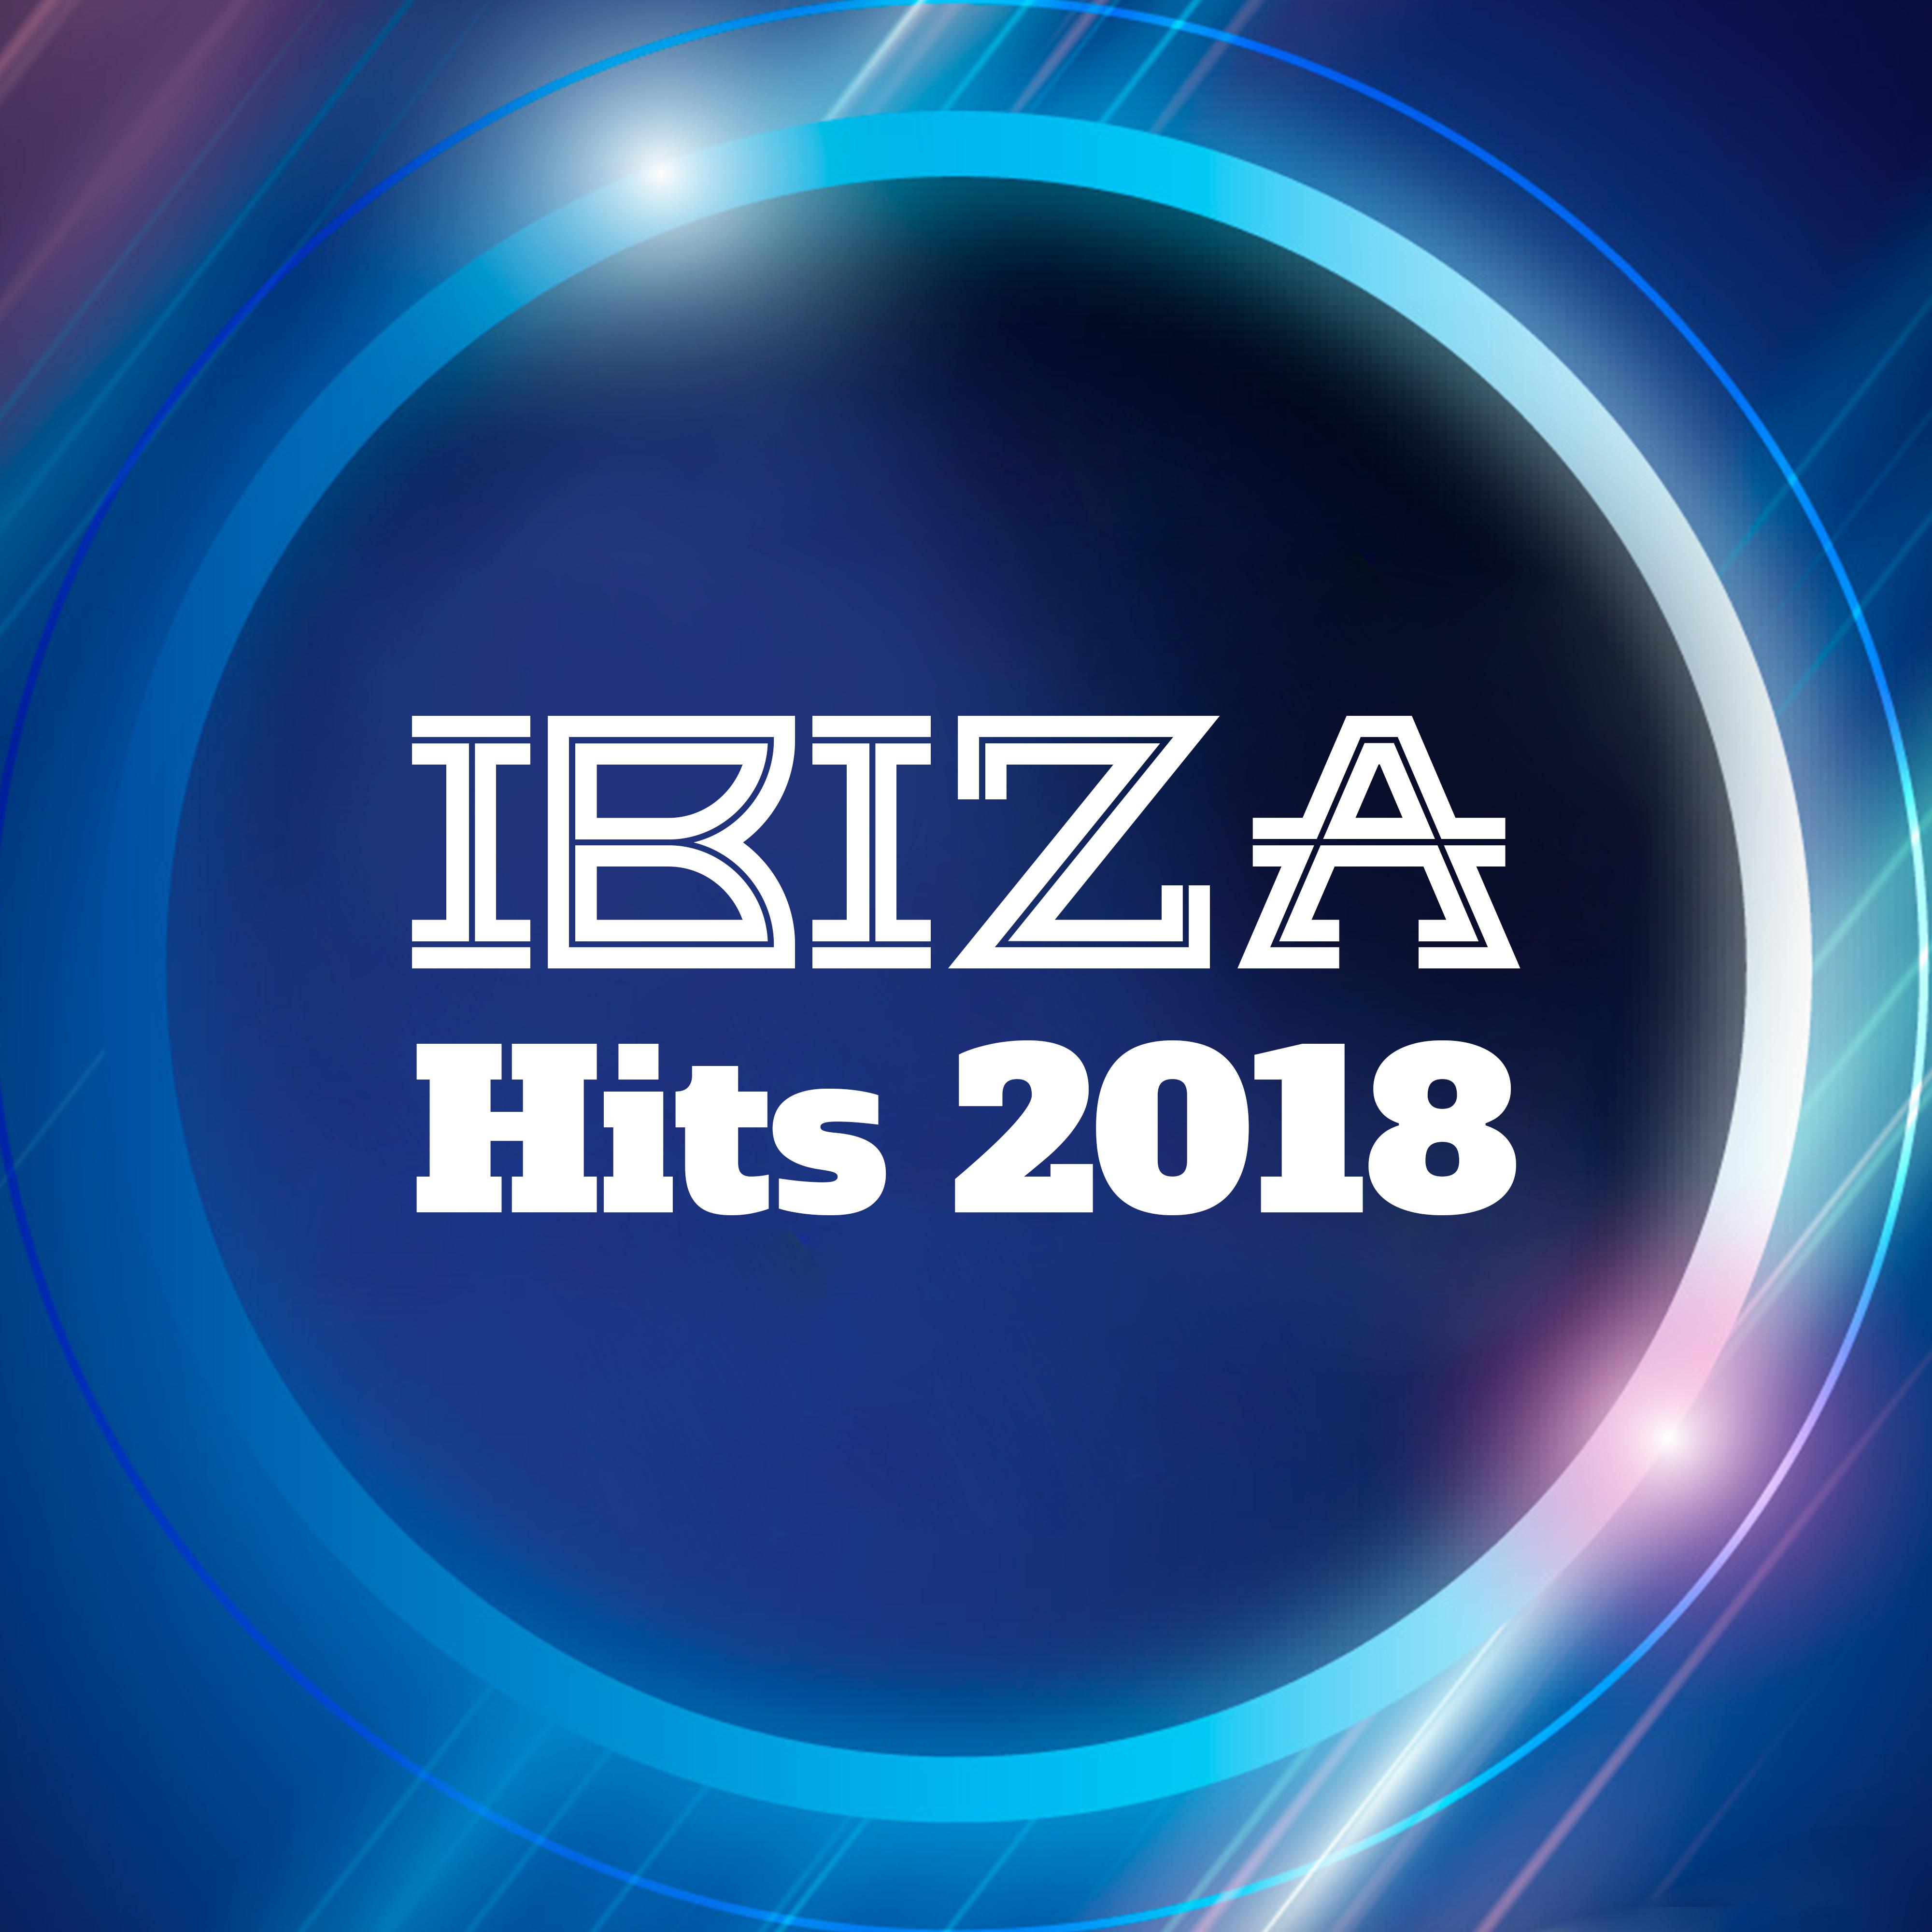 Ibiza Hits 2018